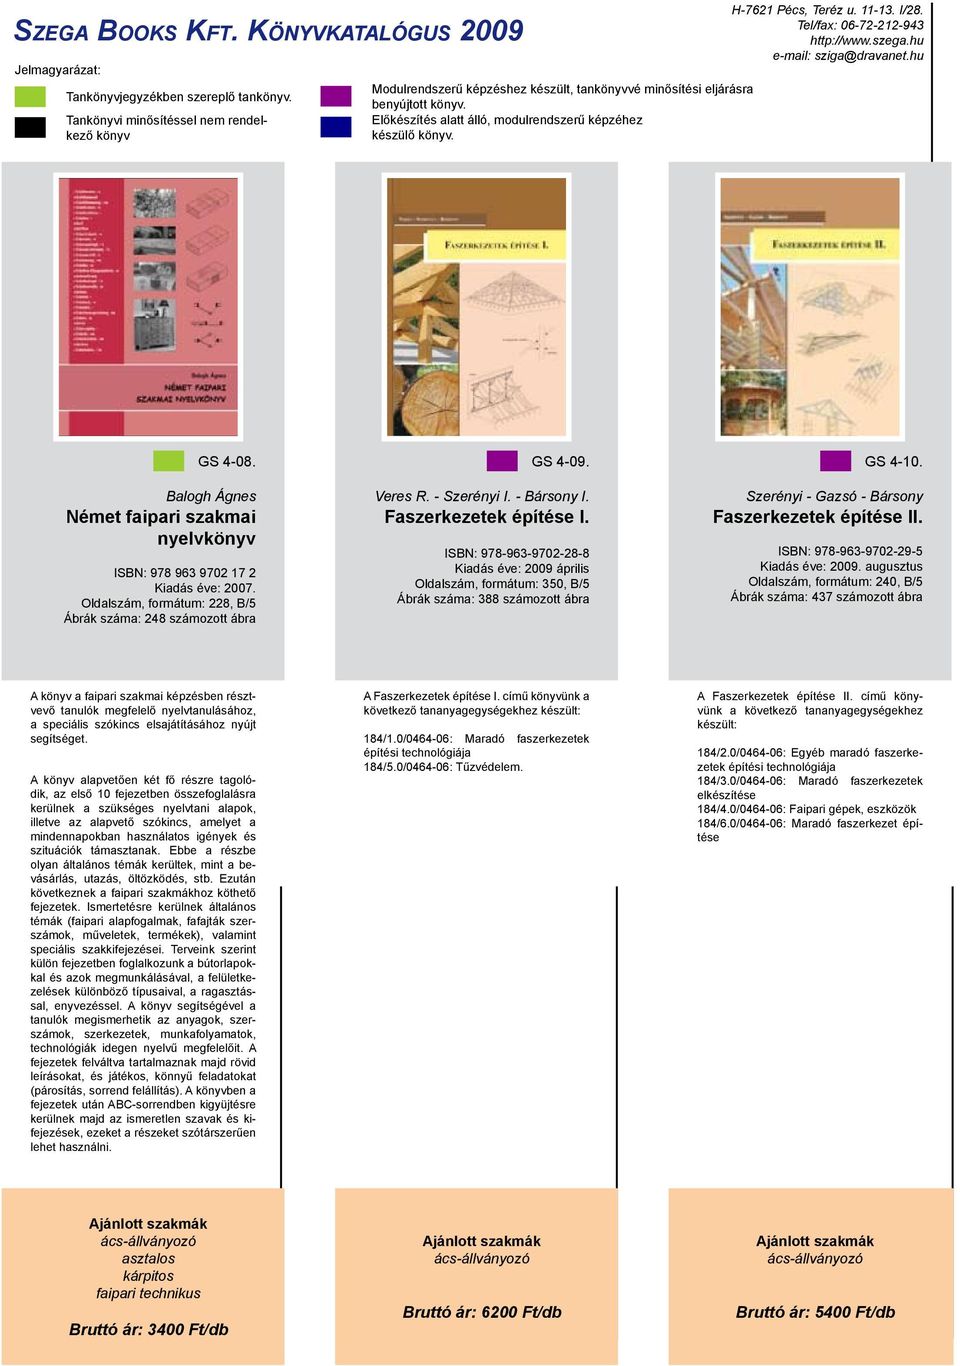 ISBN: 978-963-9702-28-8 Kiadás éve: 2009 április Oldalszám, formátum: 350, B/5 Ábrák száma: 388 számozott ábra GS 4-10. Szerényi - Gazsó - Bársony Faszerkezetek építése II.